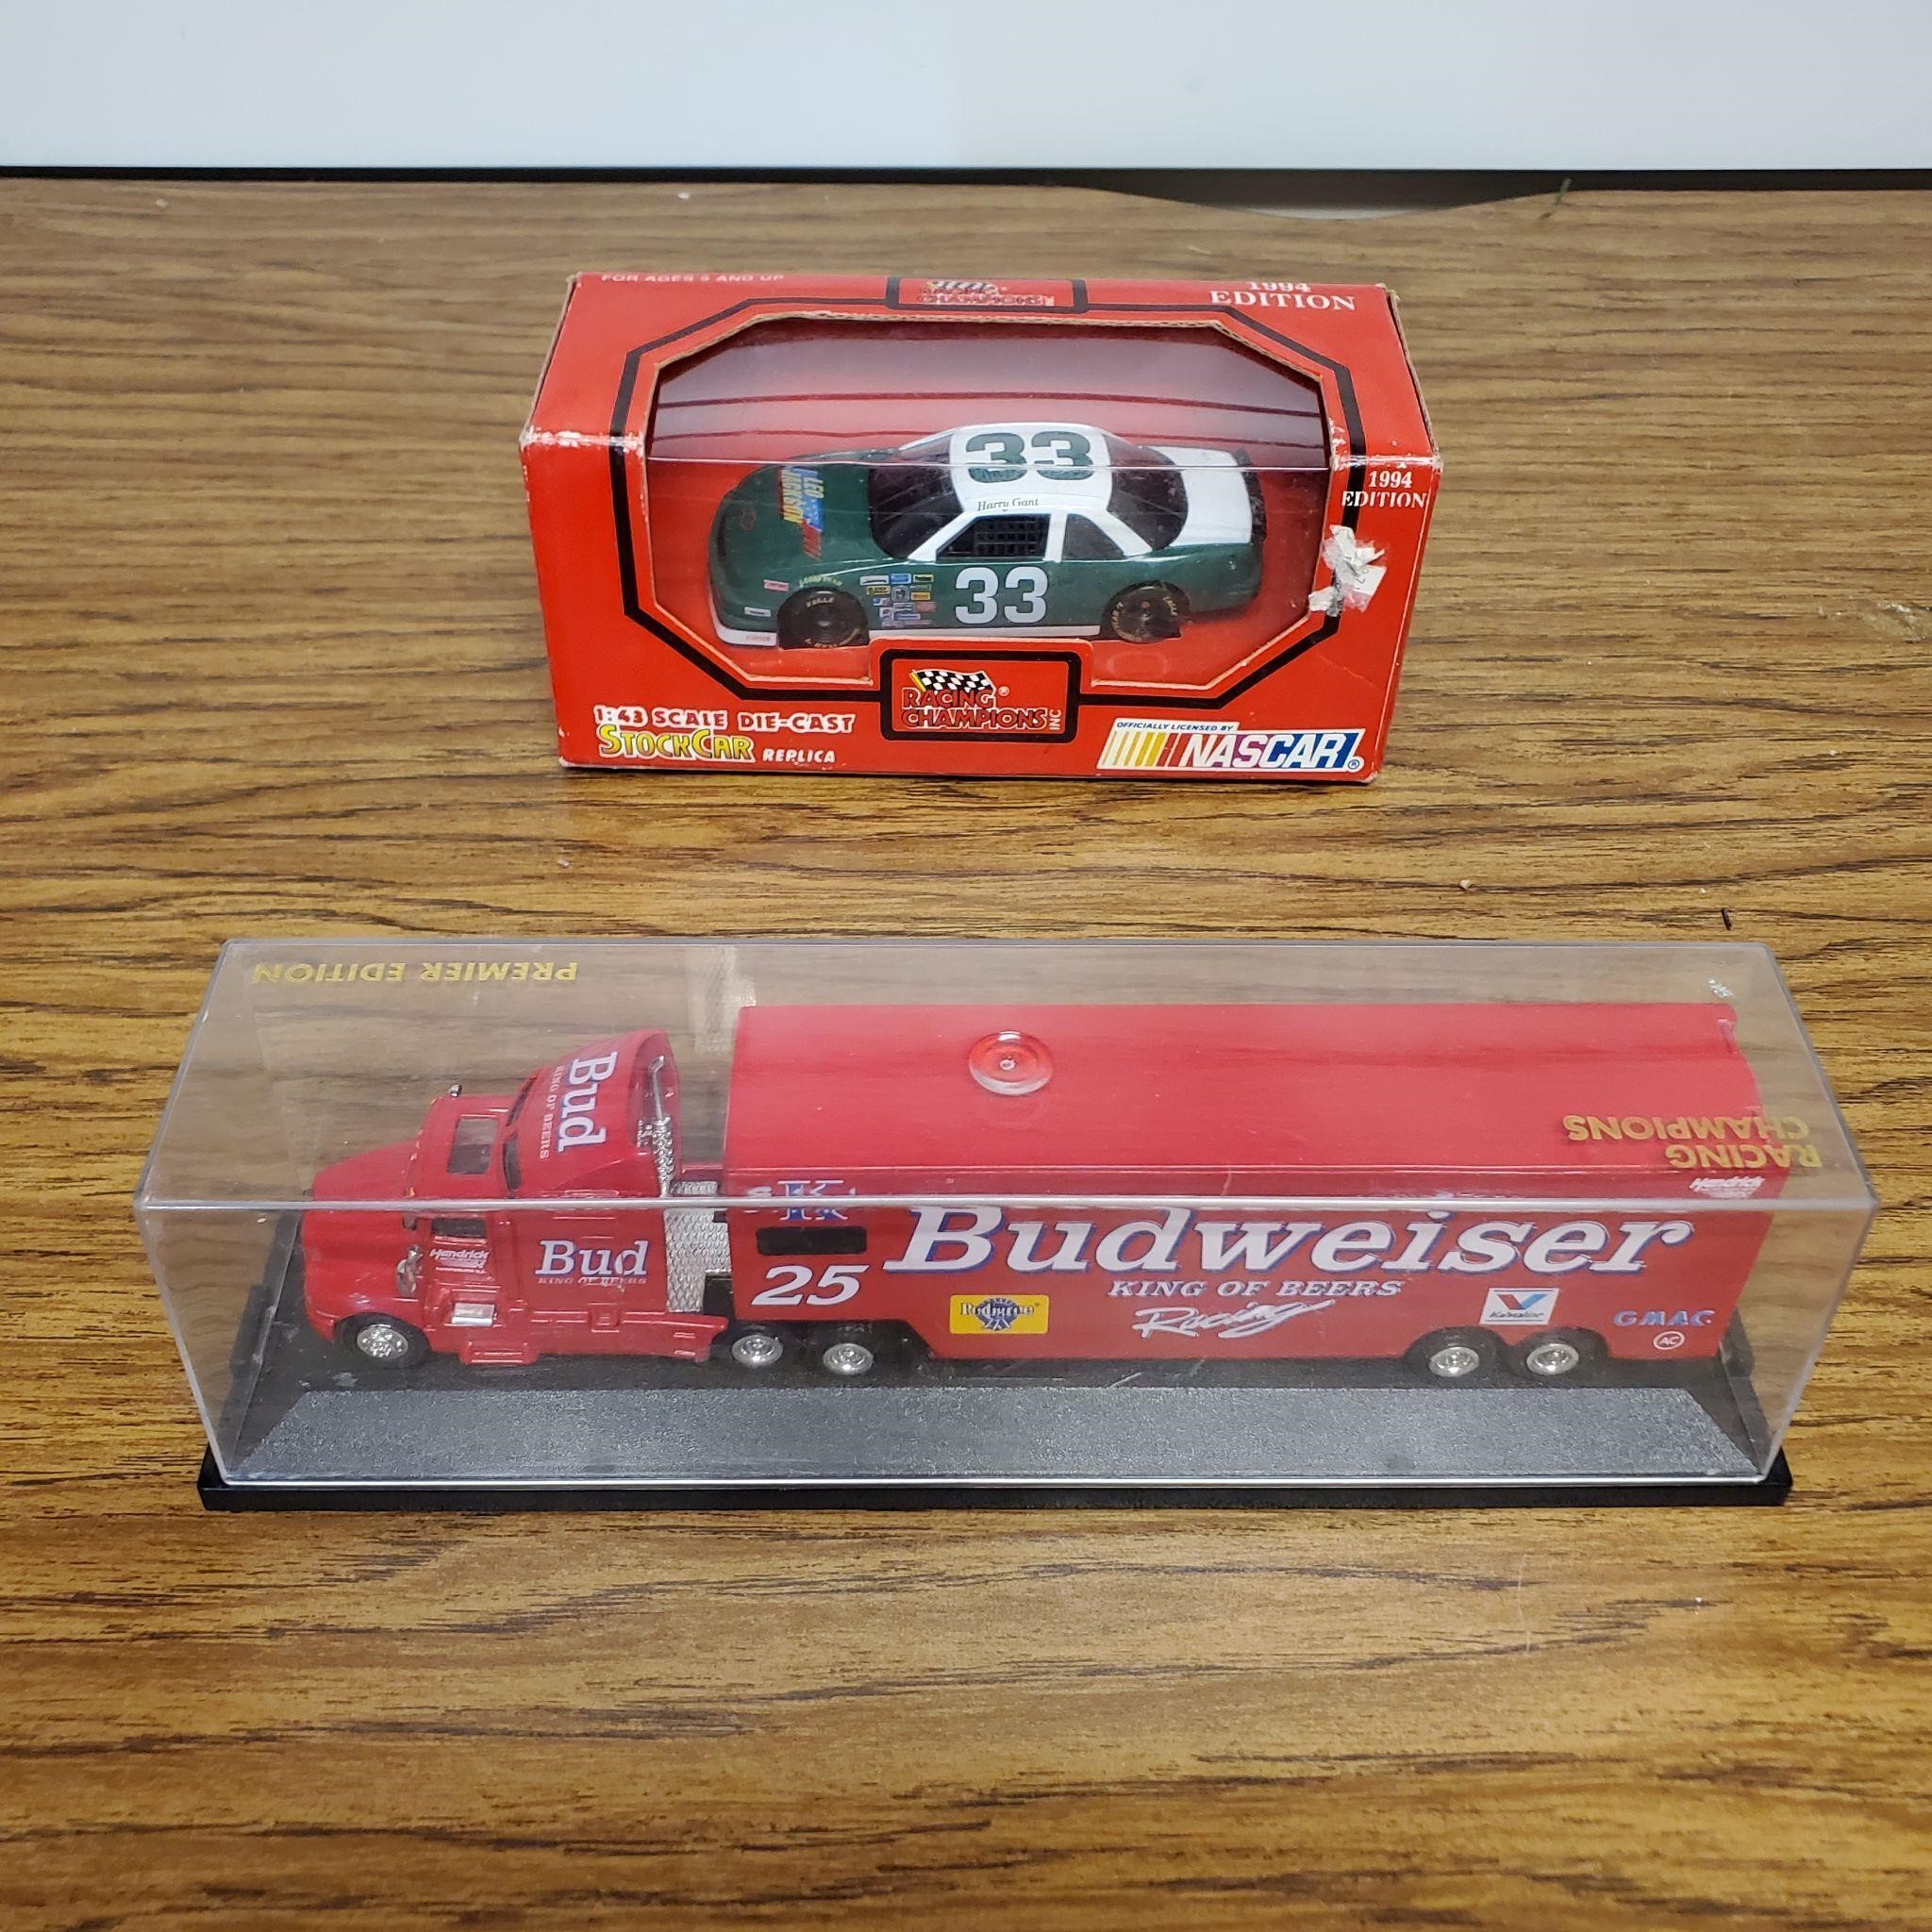 Budweiser Truck and Nascar #33 Race Car